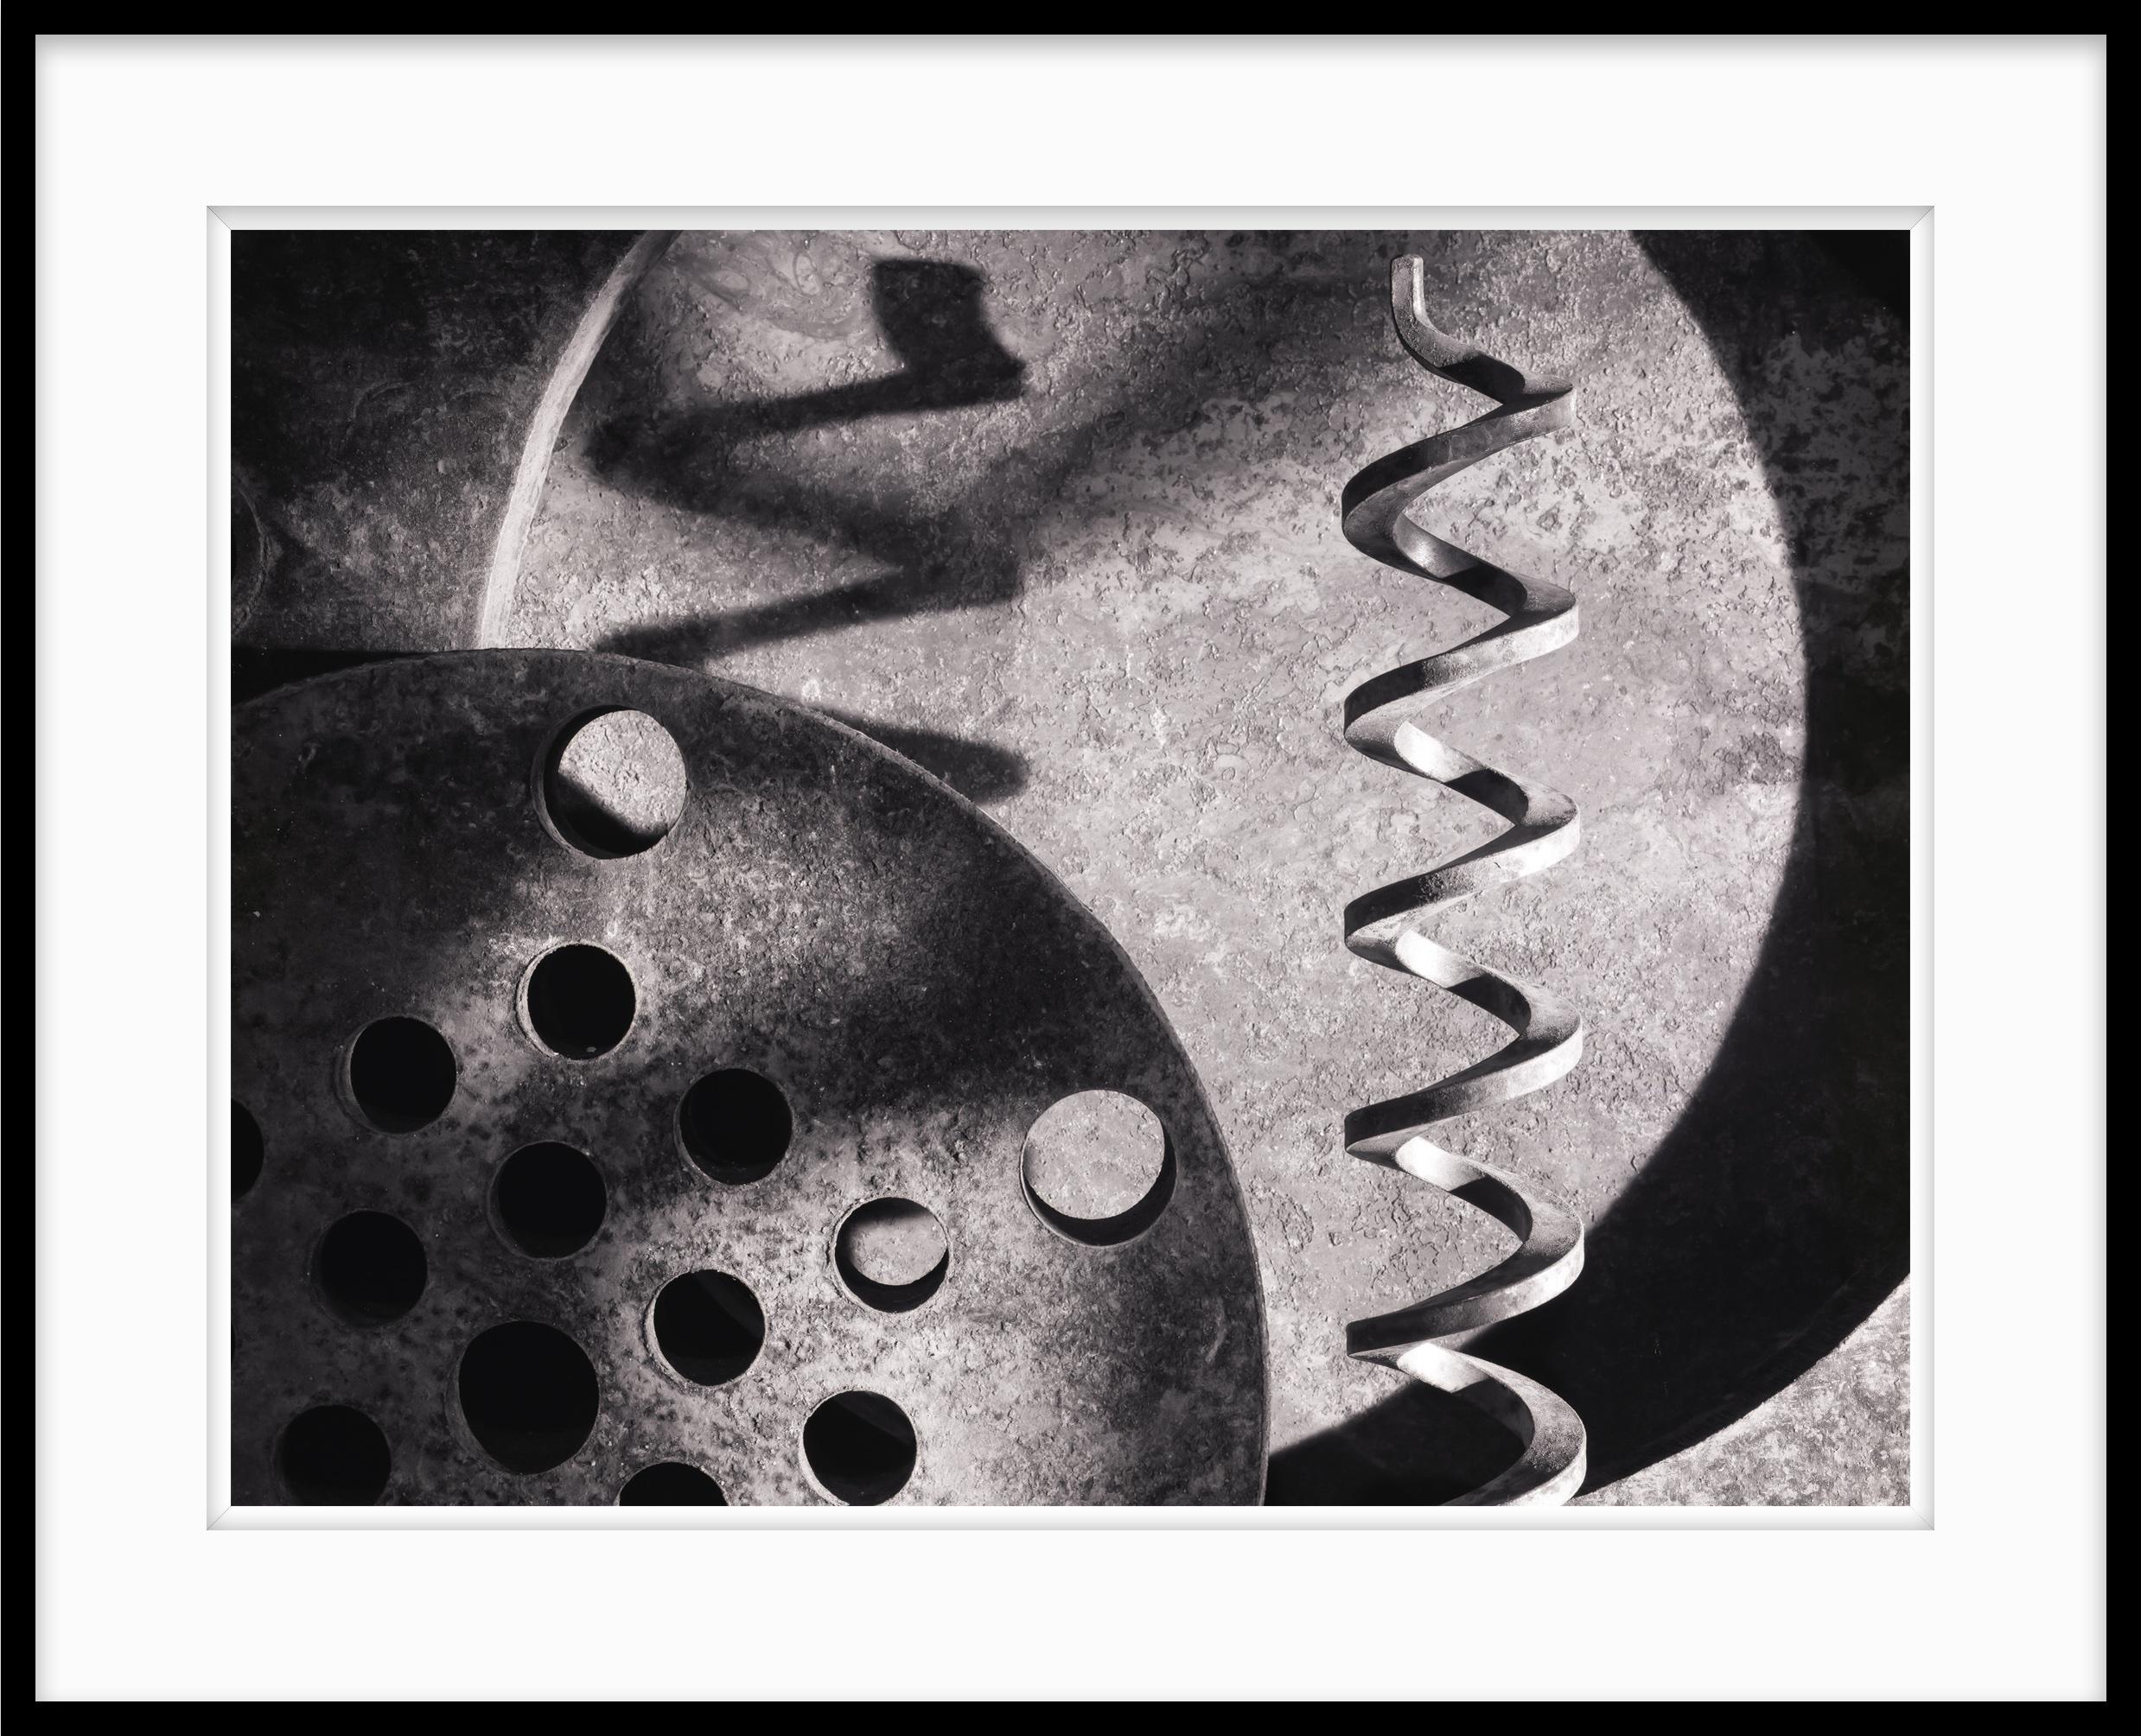  Schwarz-Weiß-Fotografie in limitierter Auflage, Inner Workings #2 20 x 24 – Photograph von Howard Lewis